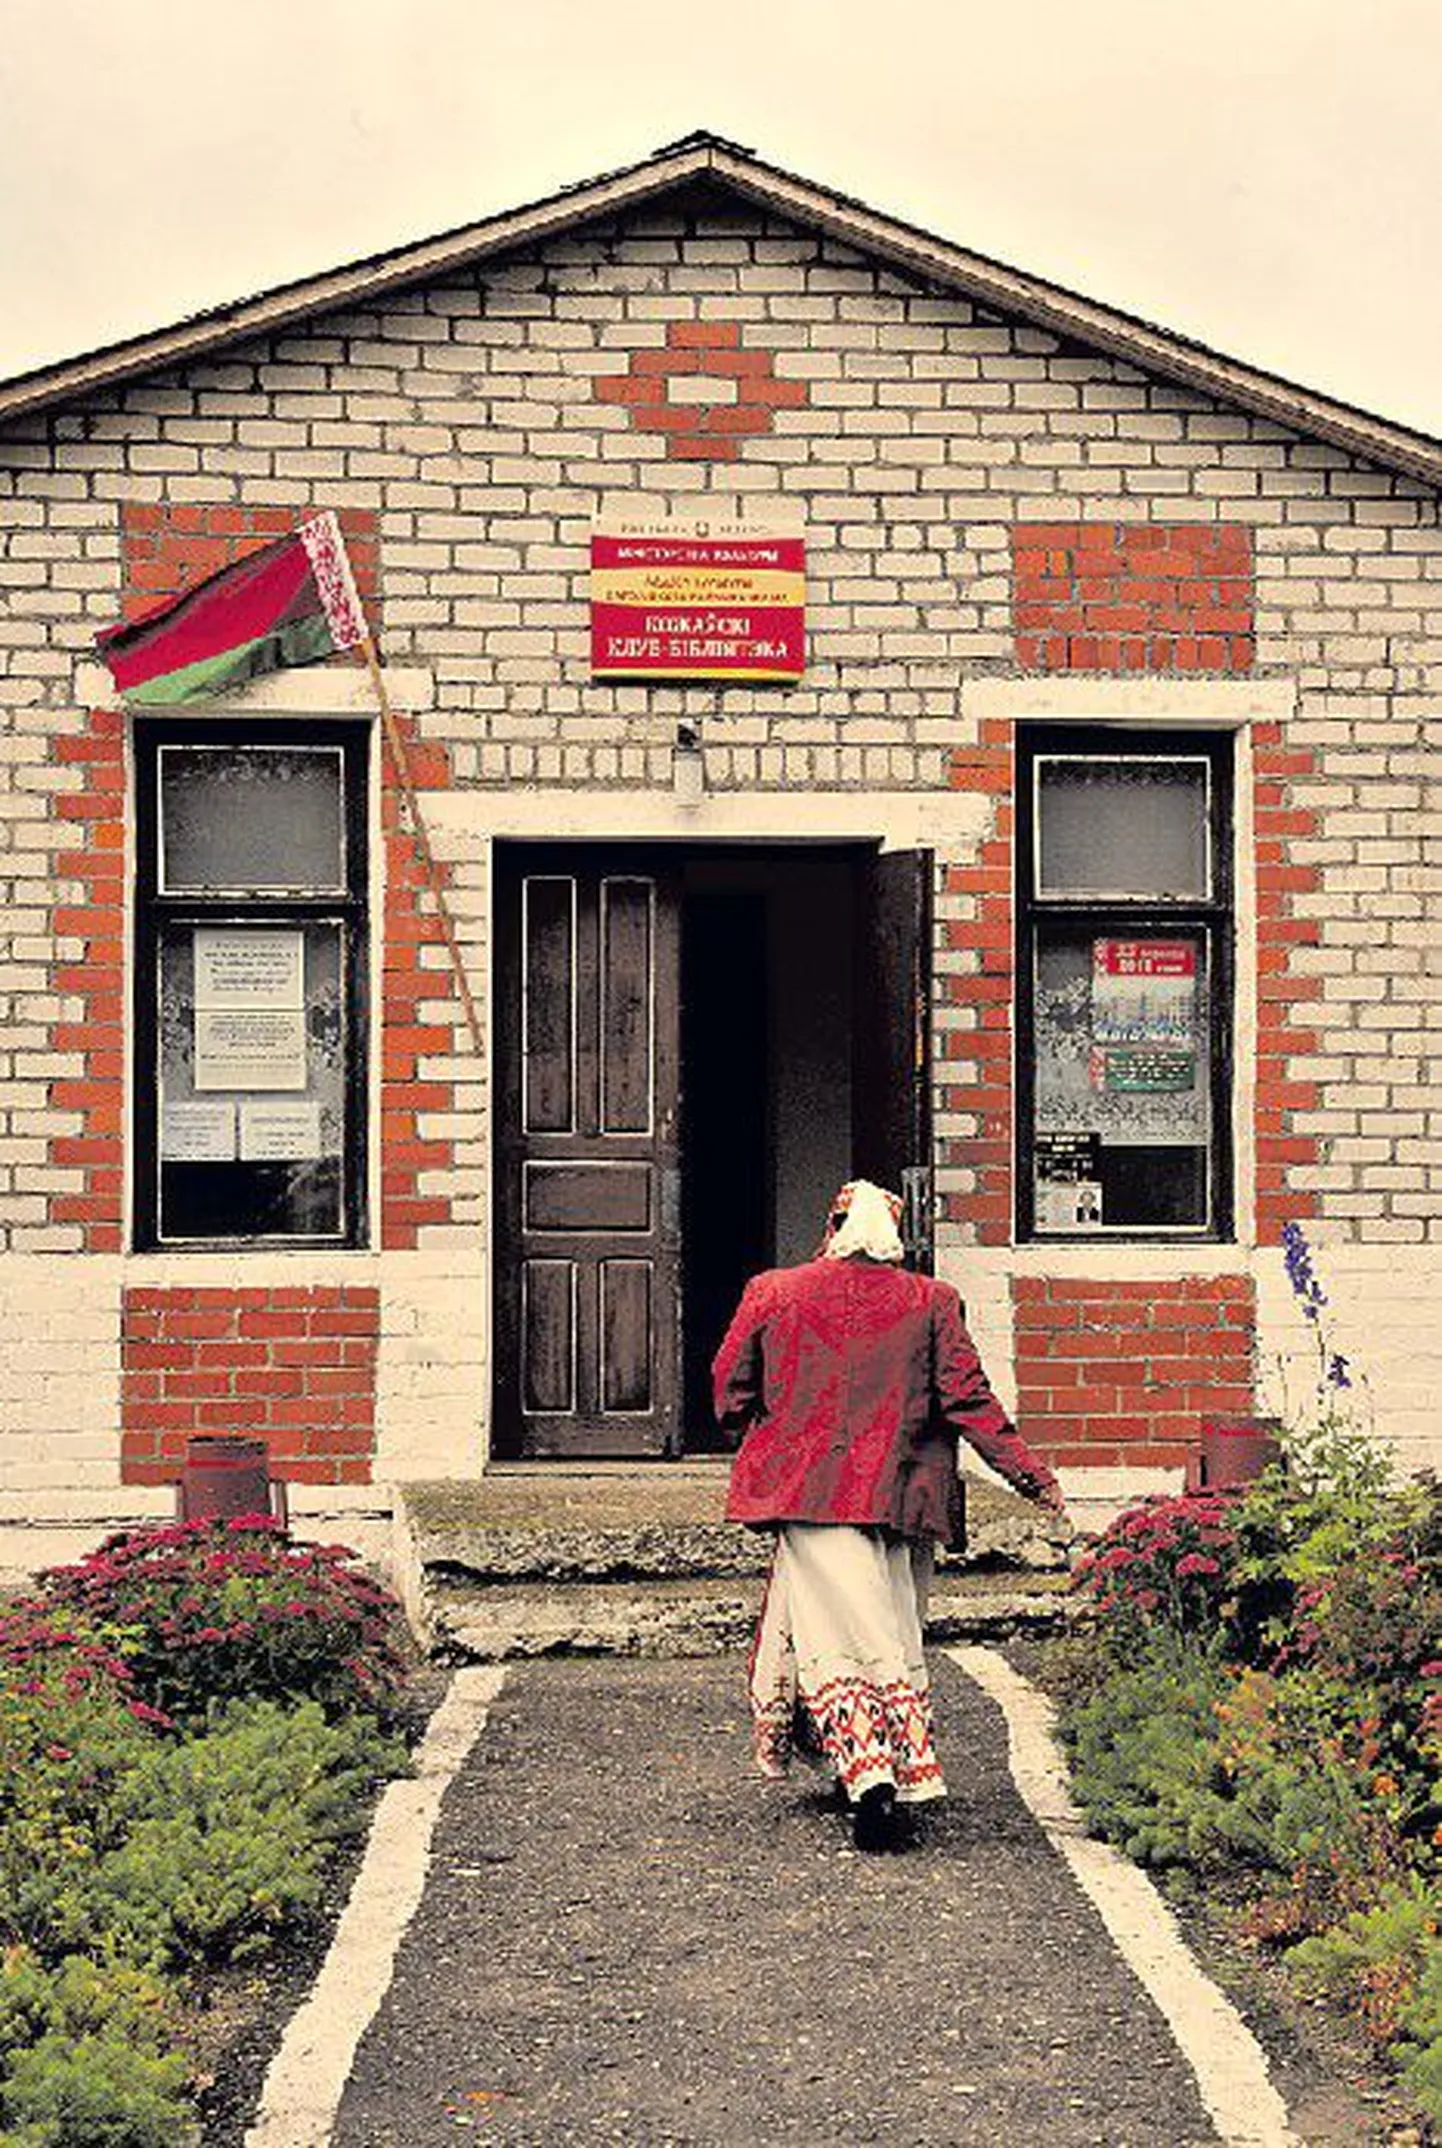 Избирательный участок в деревне Кожава Гродненской области.Фото: райго паюла